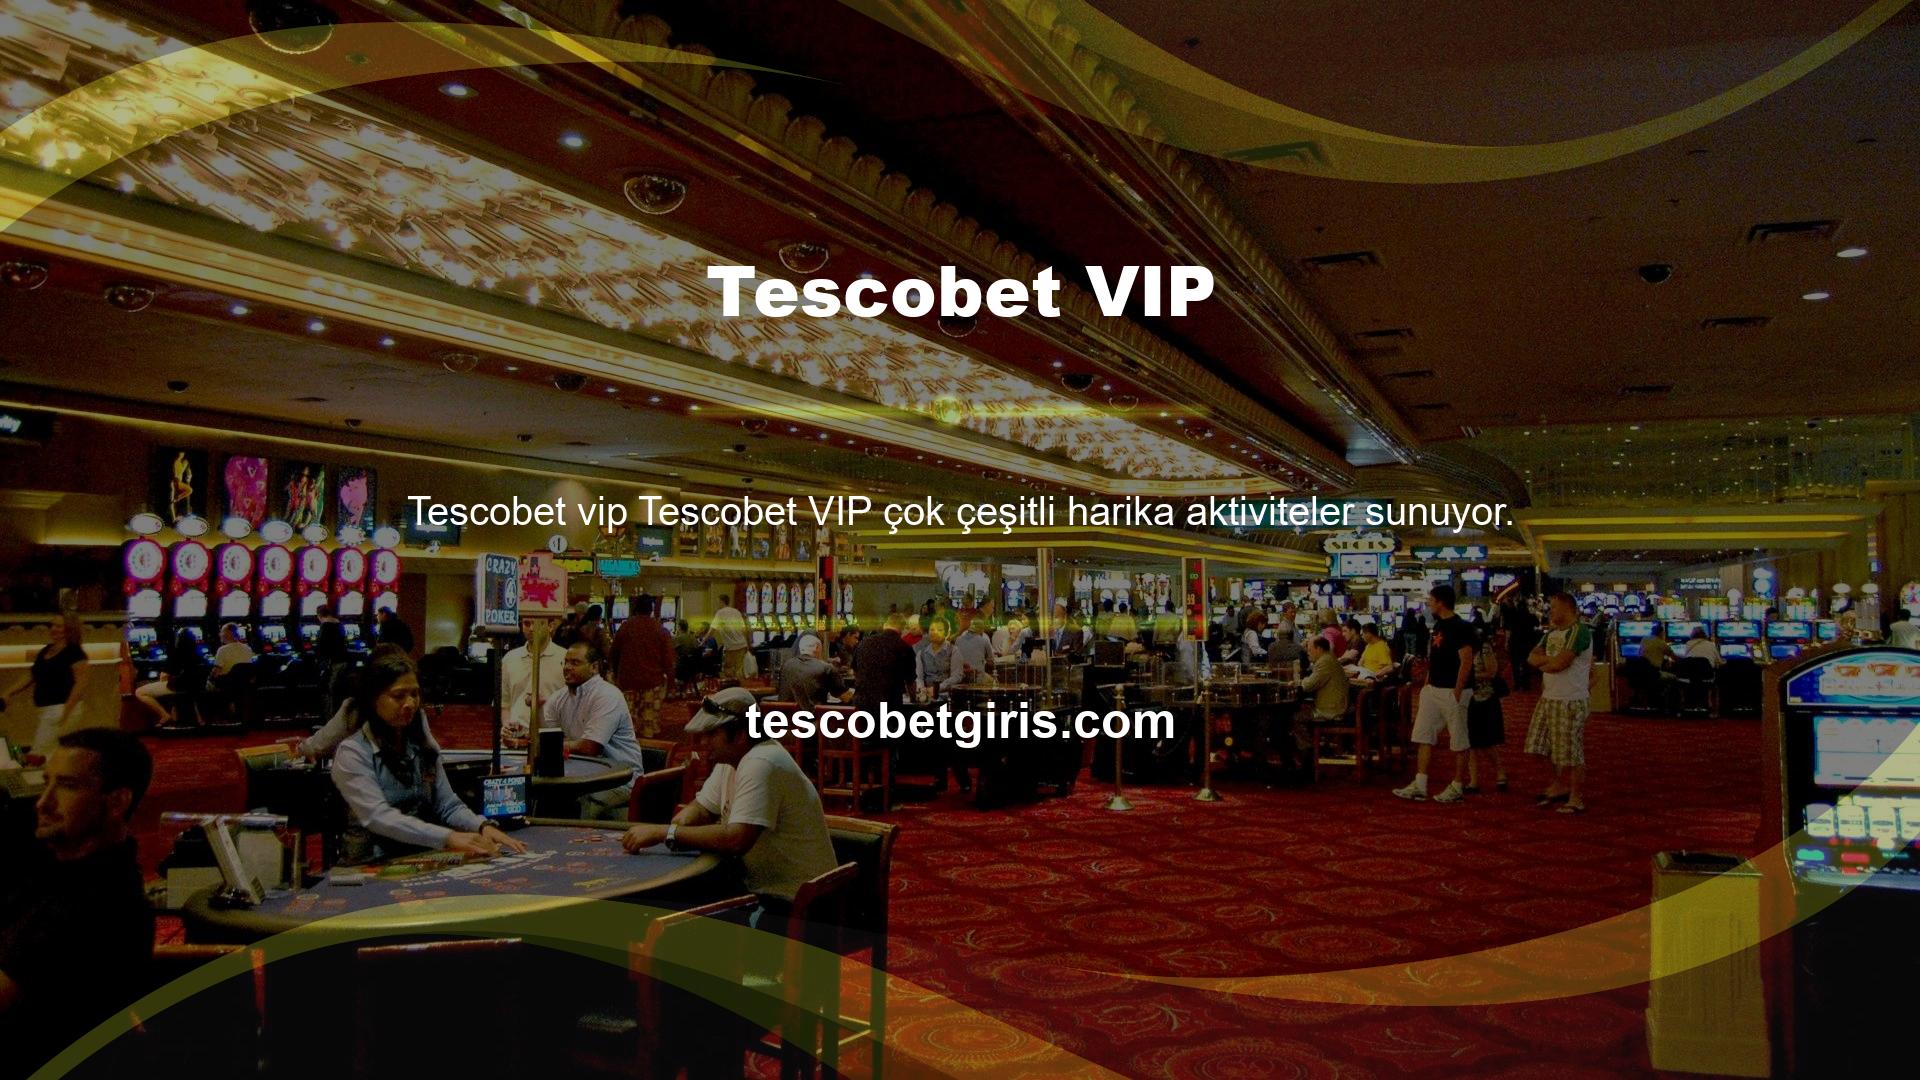 Tescobet VIP uygulaması en kısa sürede e-posta ile sağlanacaktır